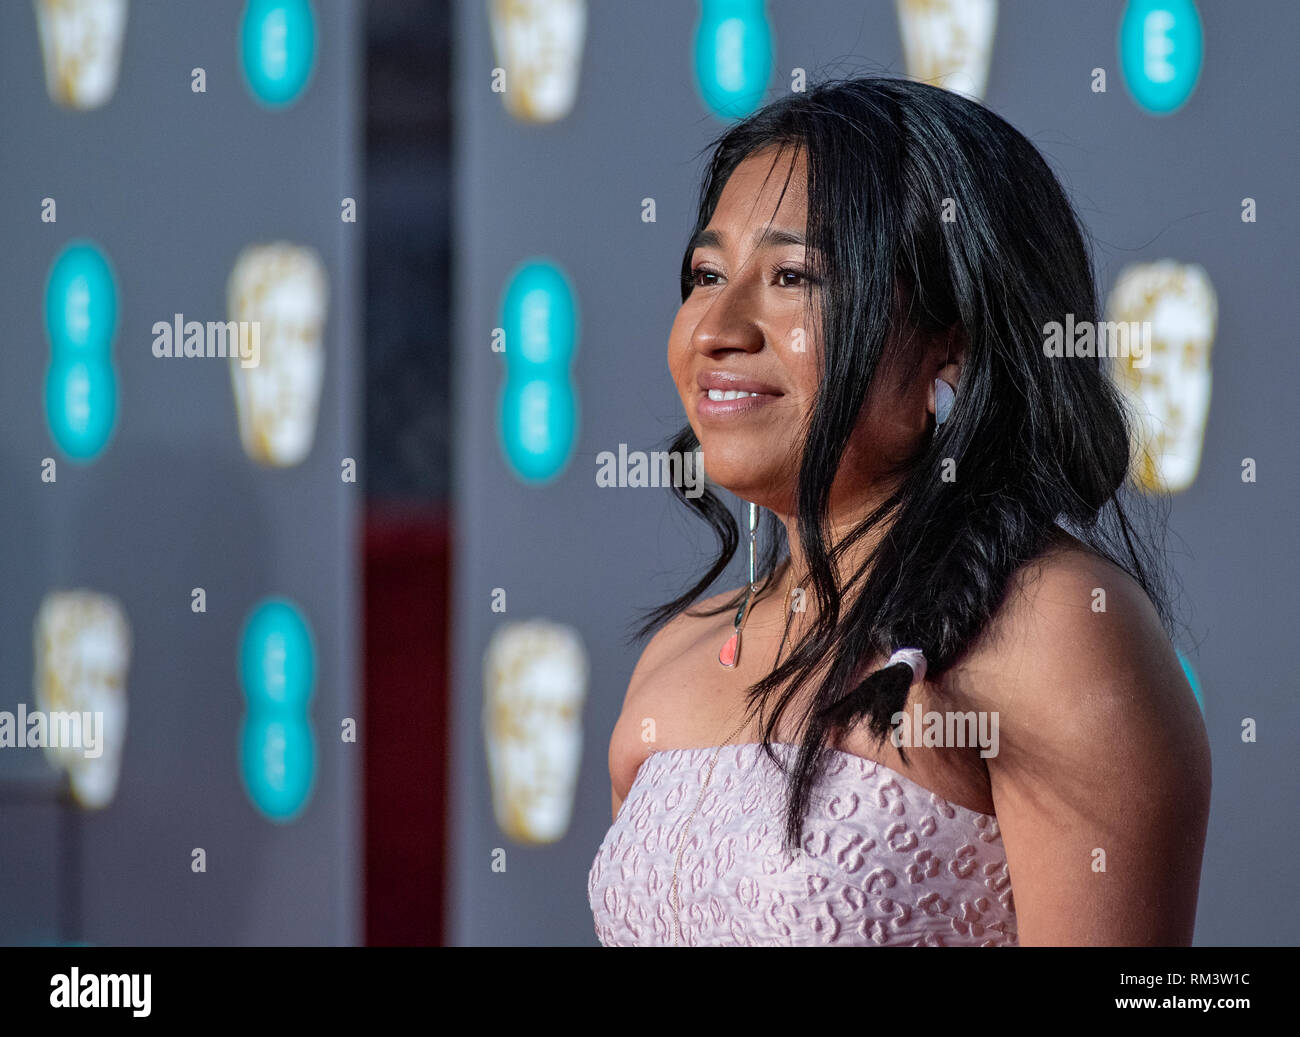 Nancy Garcia besucht die EE British Academy Film Awards in der Royal Albert Hall. Stockfoto